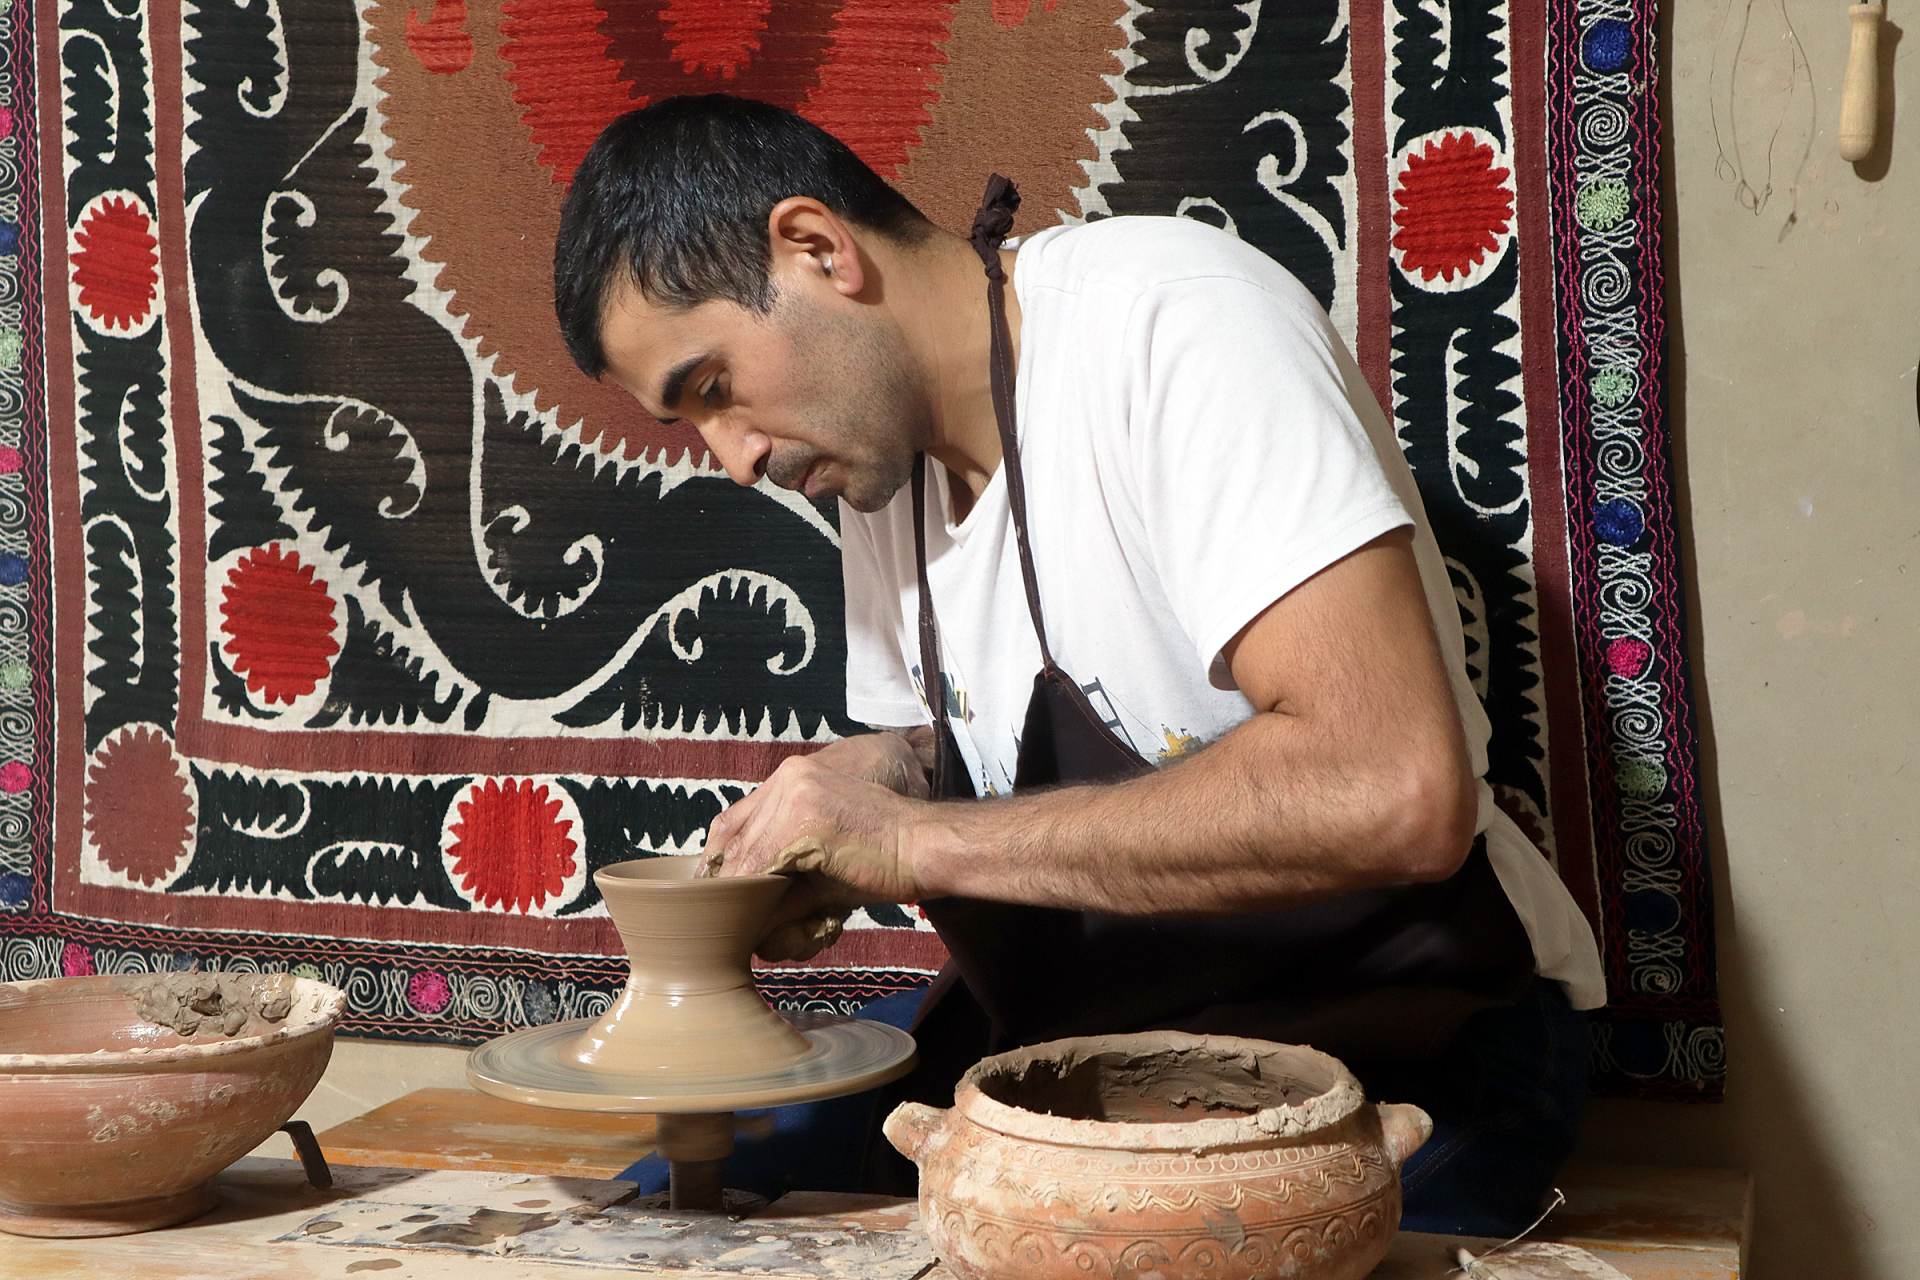 ボボムロドフ工房で陶器制作の匠の技を見る